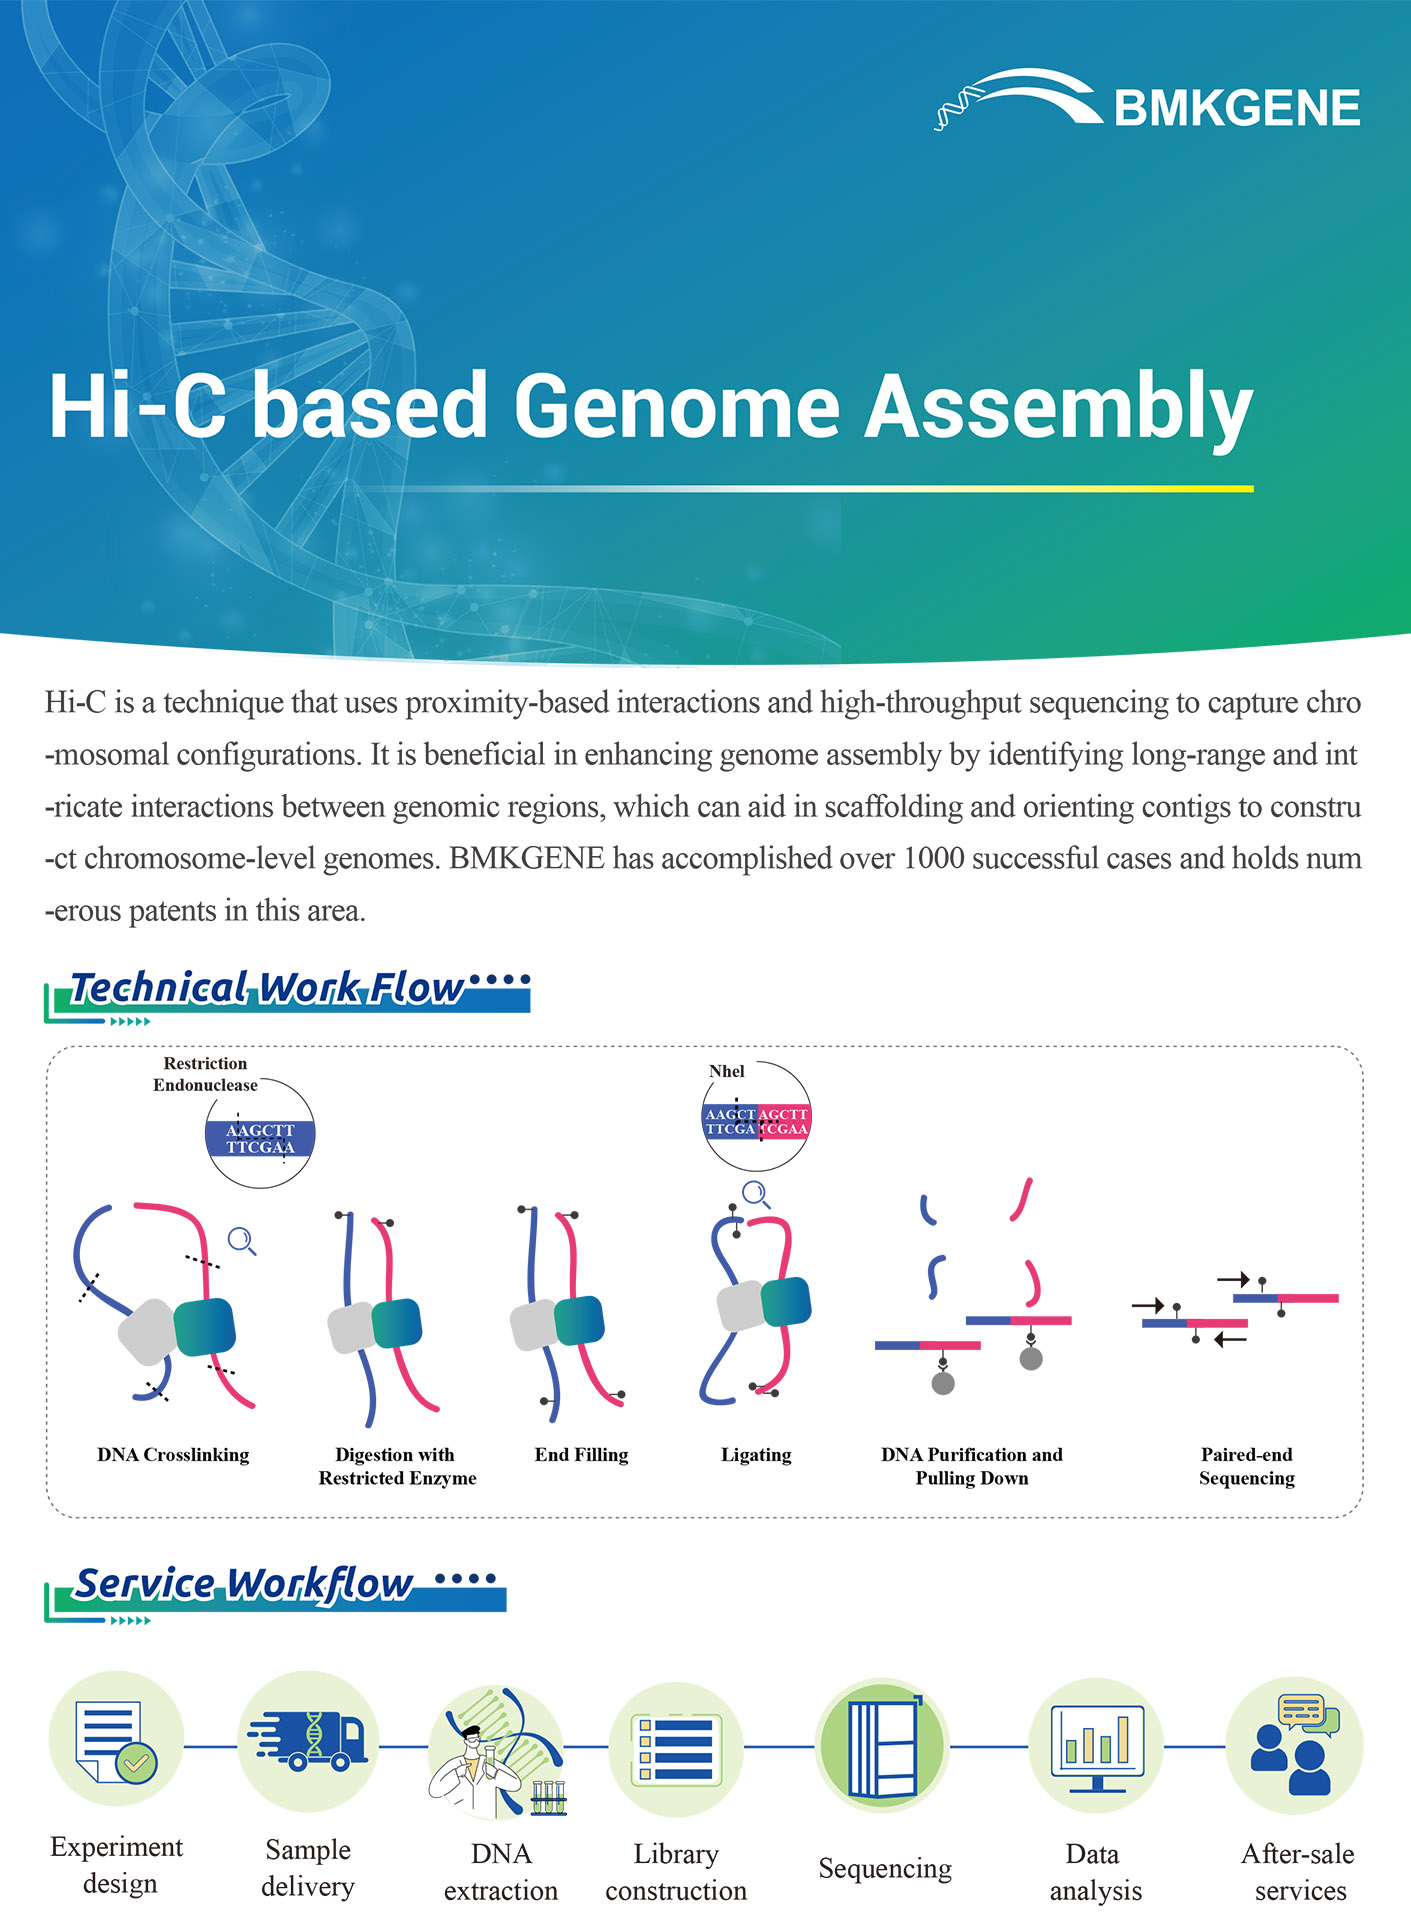 http://www.bmkgene.com/uploads/Hi-C-based-Genome-Assembly-BMKGENE-2310.pdf